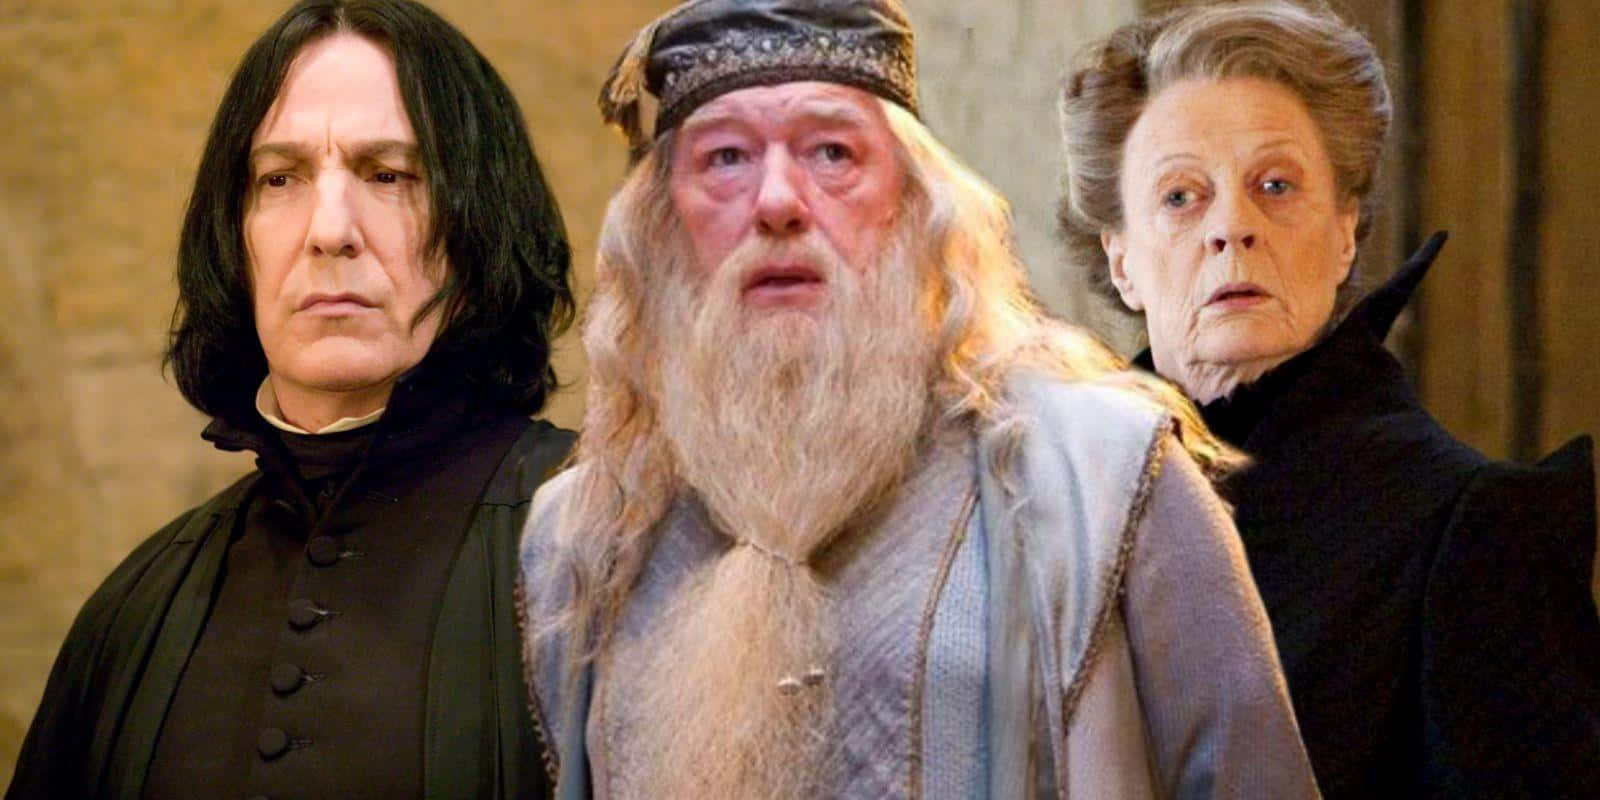 Download Image The Hogwarts Professors gathering together in Hogwarts ...